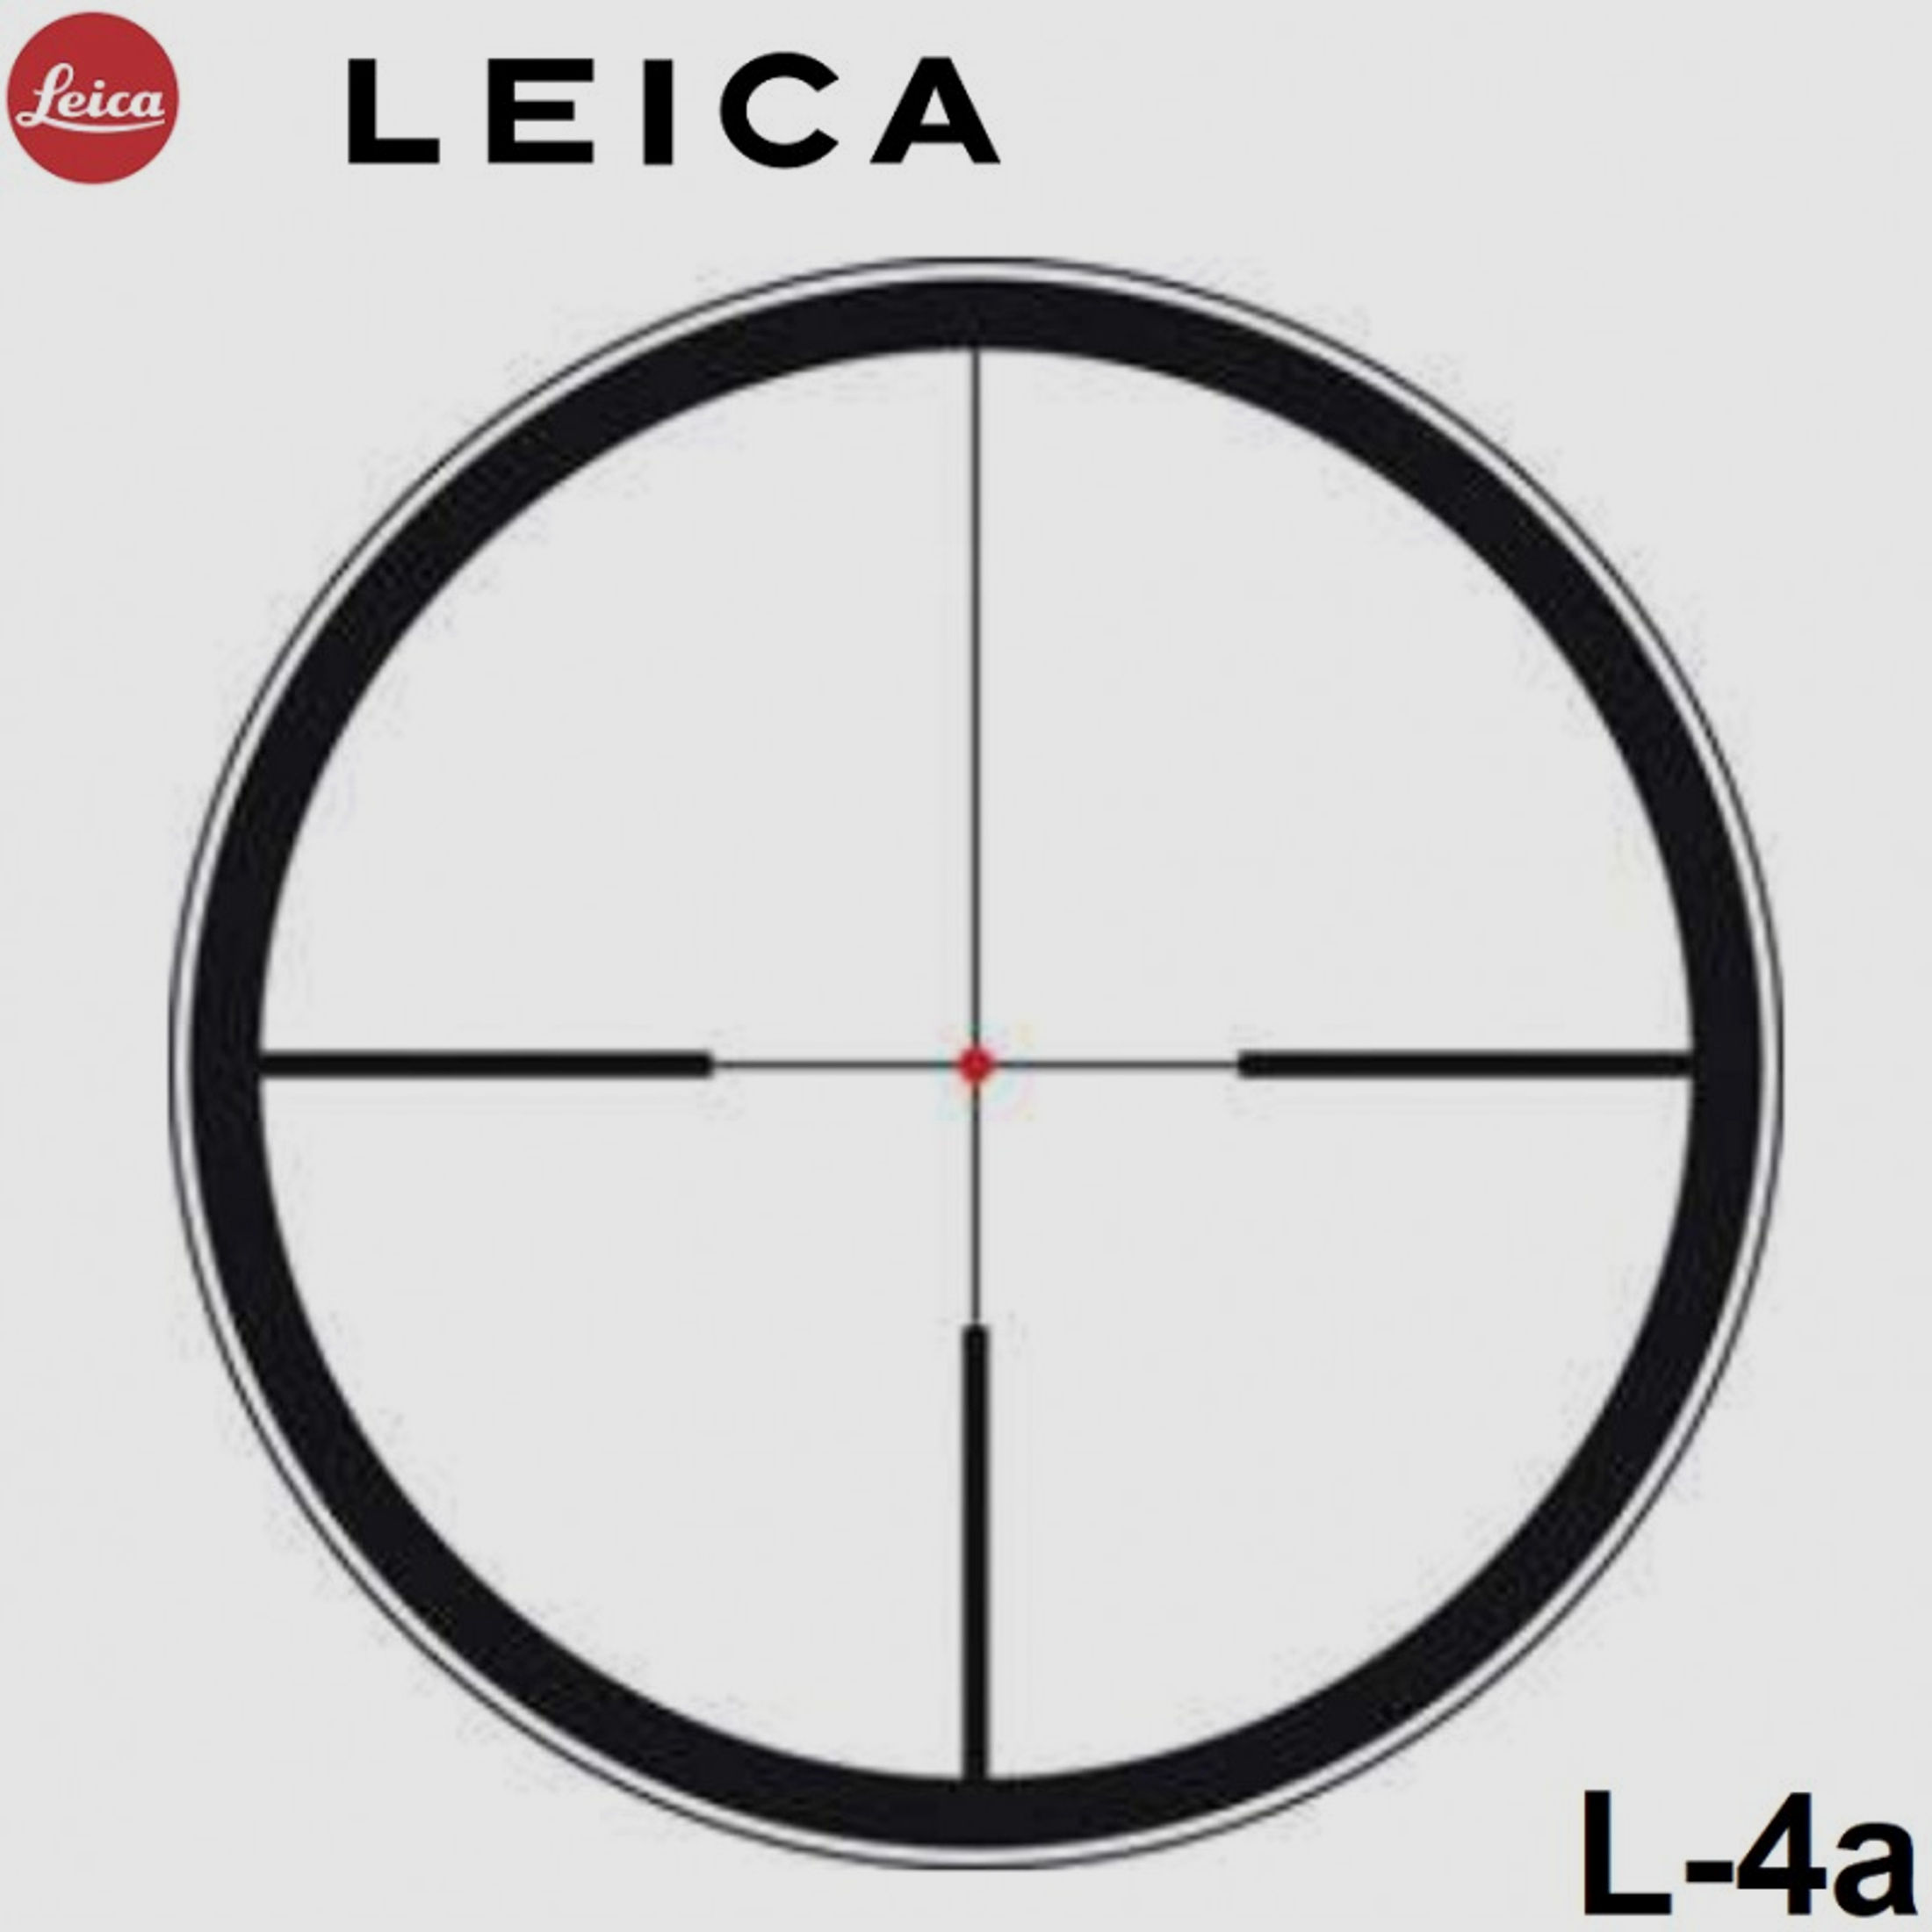 Leica Magnus 1,5-10x42 i, L-4a mit Schiene